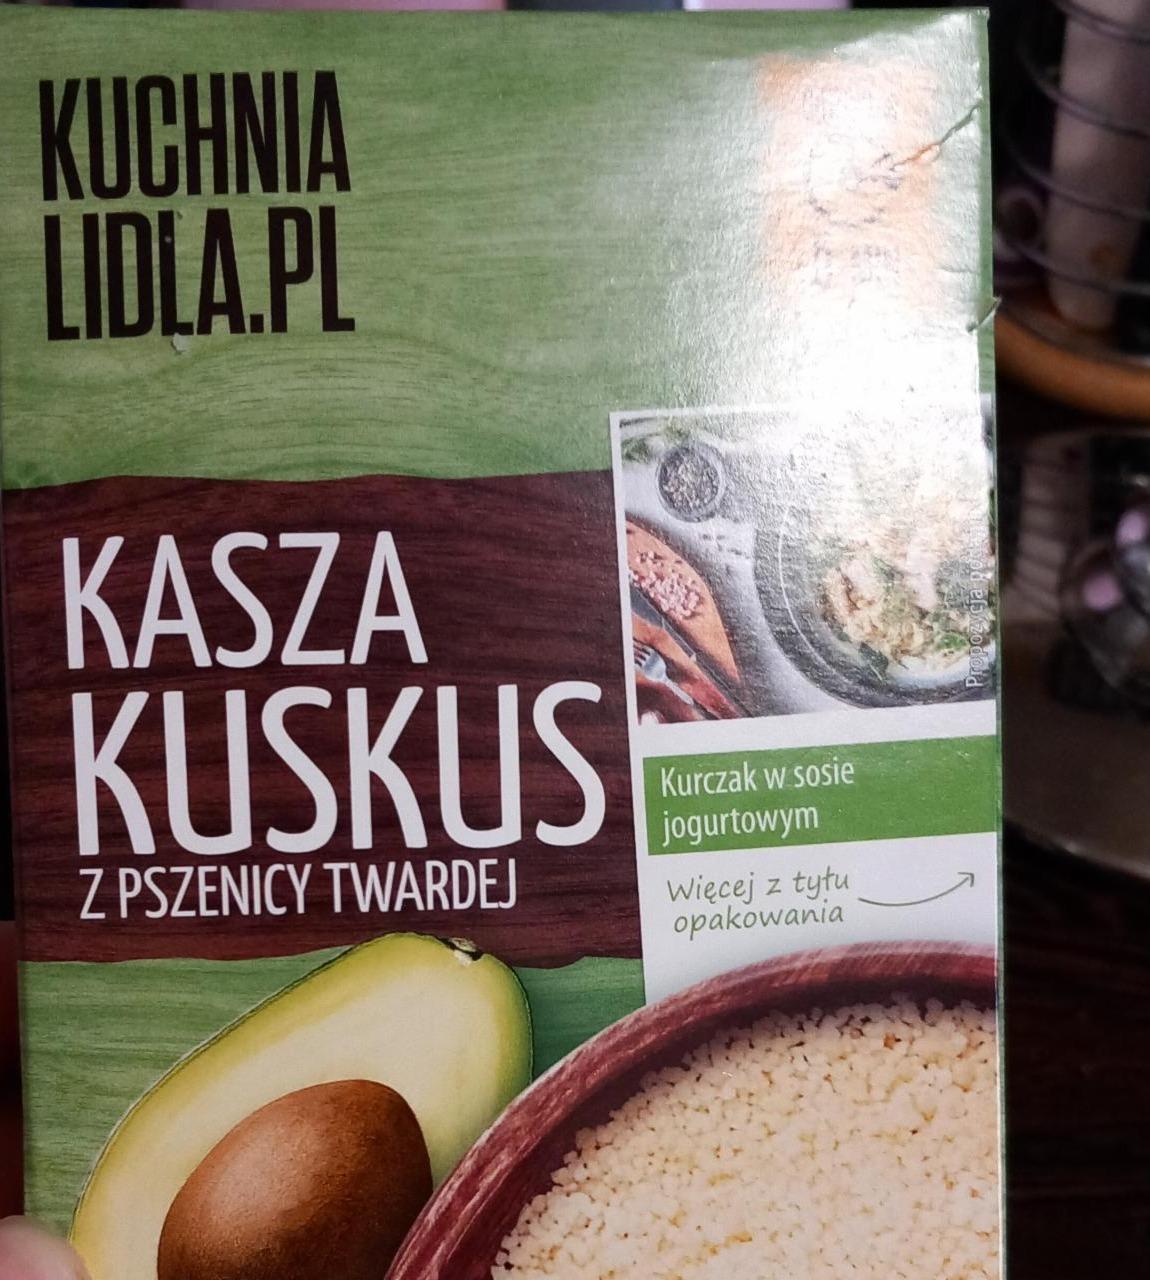 Fotografie - kuskus Kuchnia Lidla.Pl